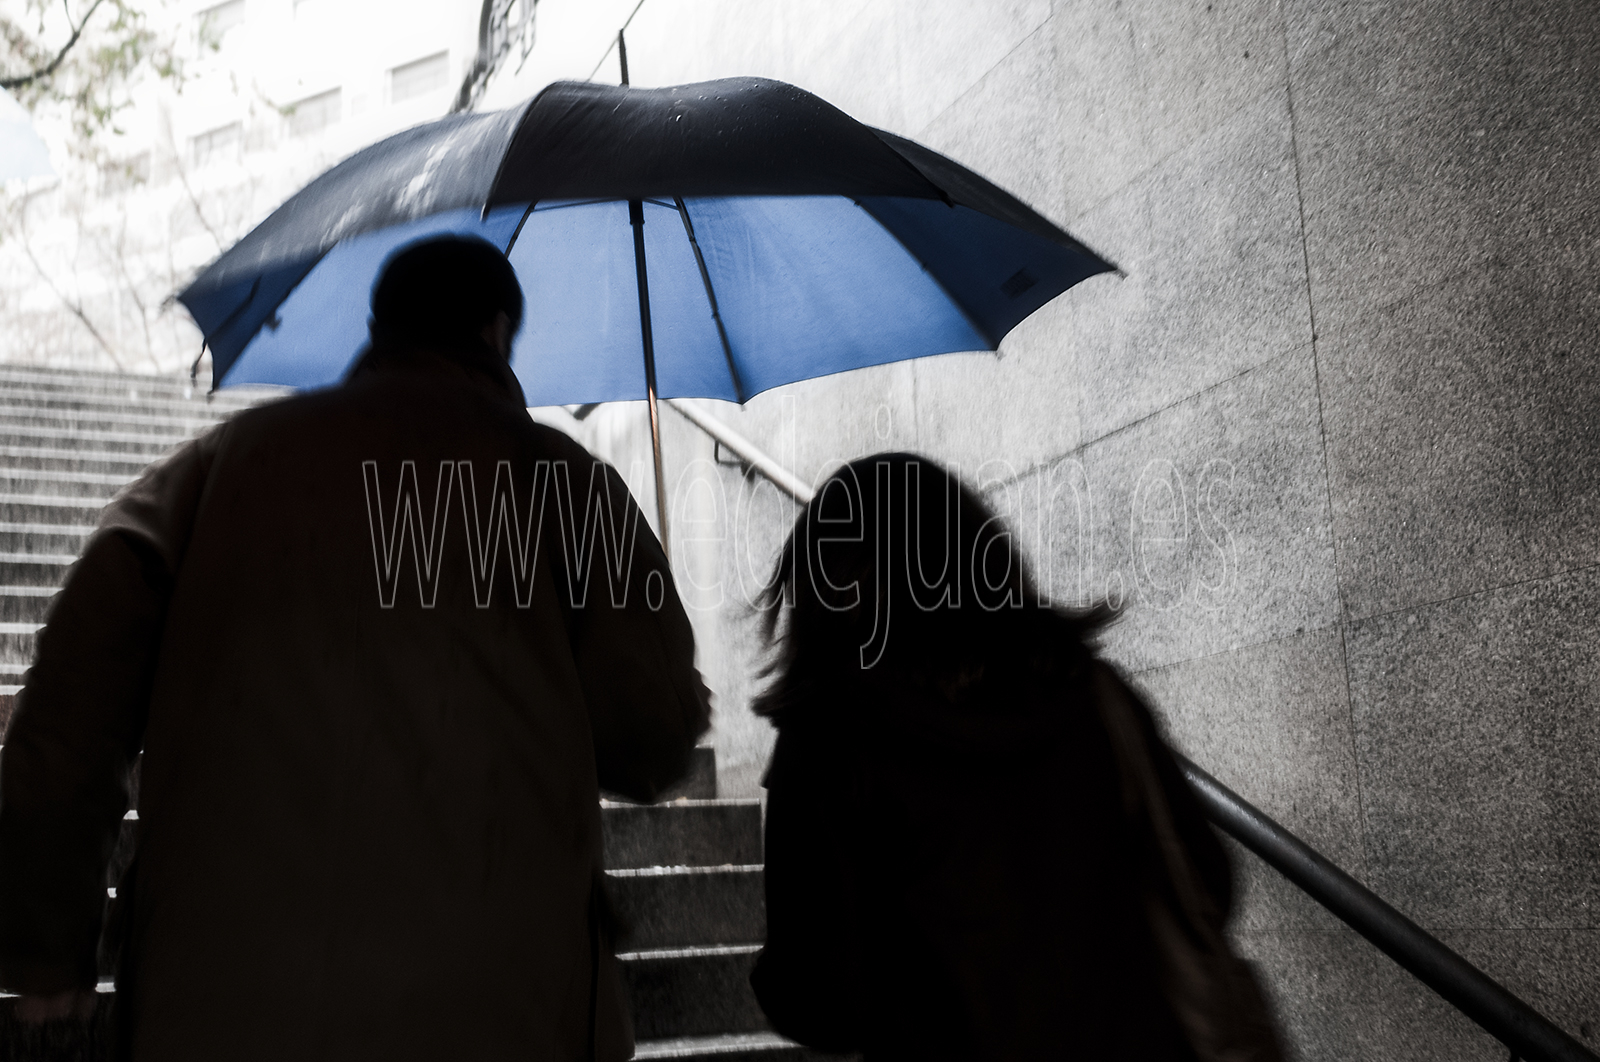 Día lluvioso, a la salida del metro de Madrid. Desaturado selectivo de la fotografía. blanco y negro más azul